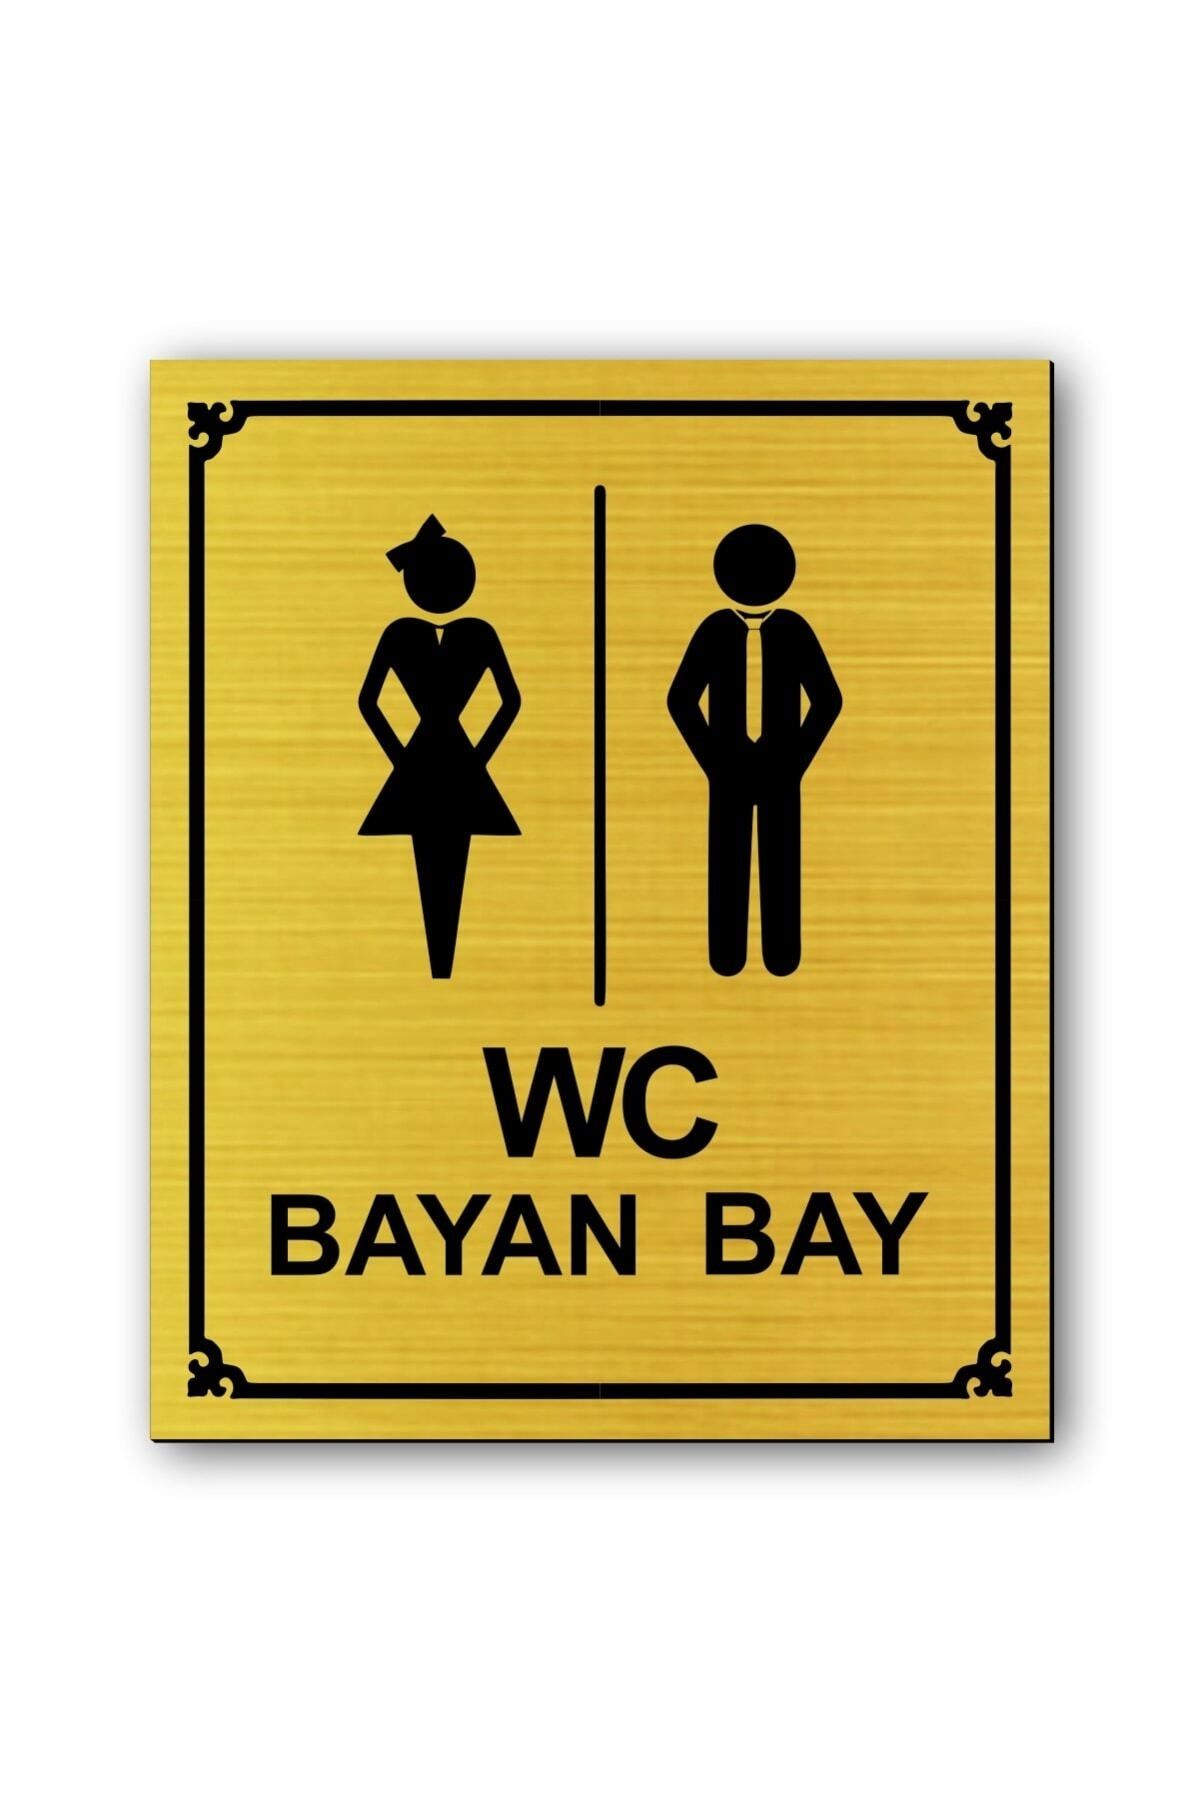 hediyemyoldaa Wc Kadın Erkek  Tuvalet Kapı Uyarı - Yönlendirme Levhası Altın Renkli 10 Cm X 12 Cm Cm Rezopal Levha